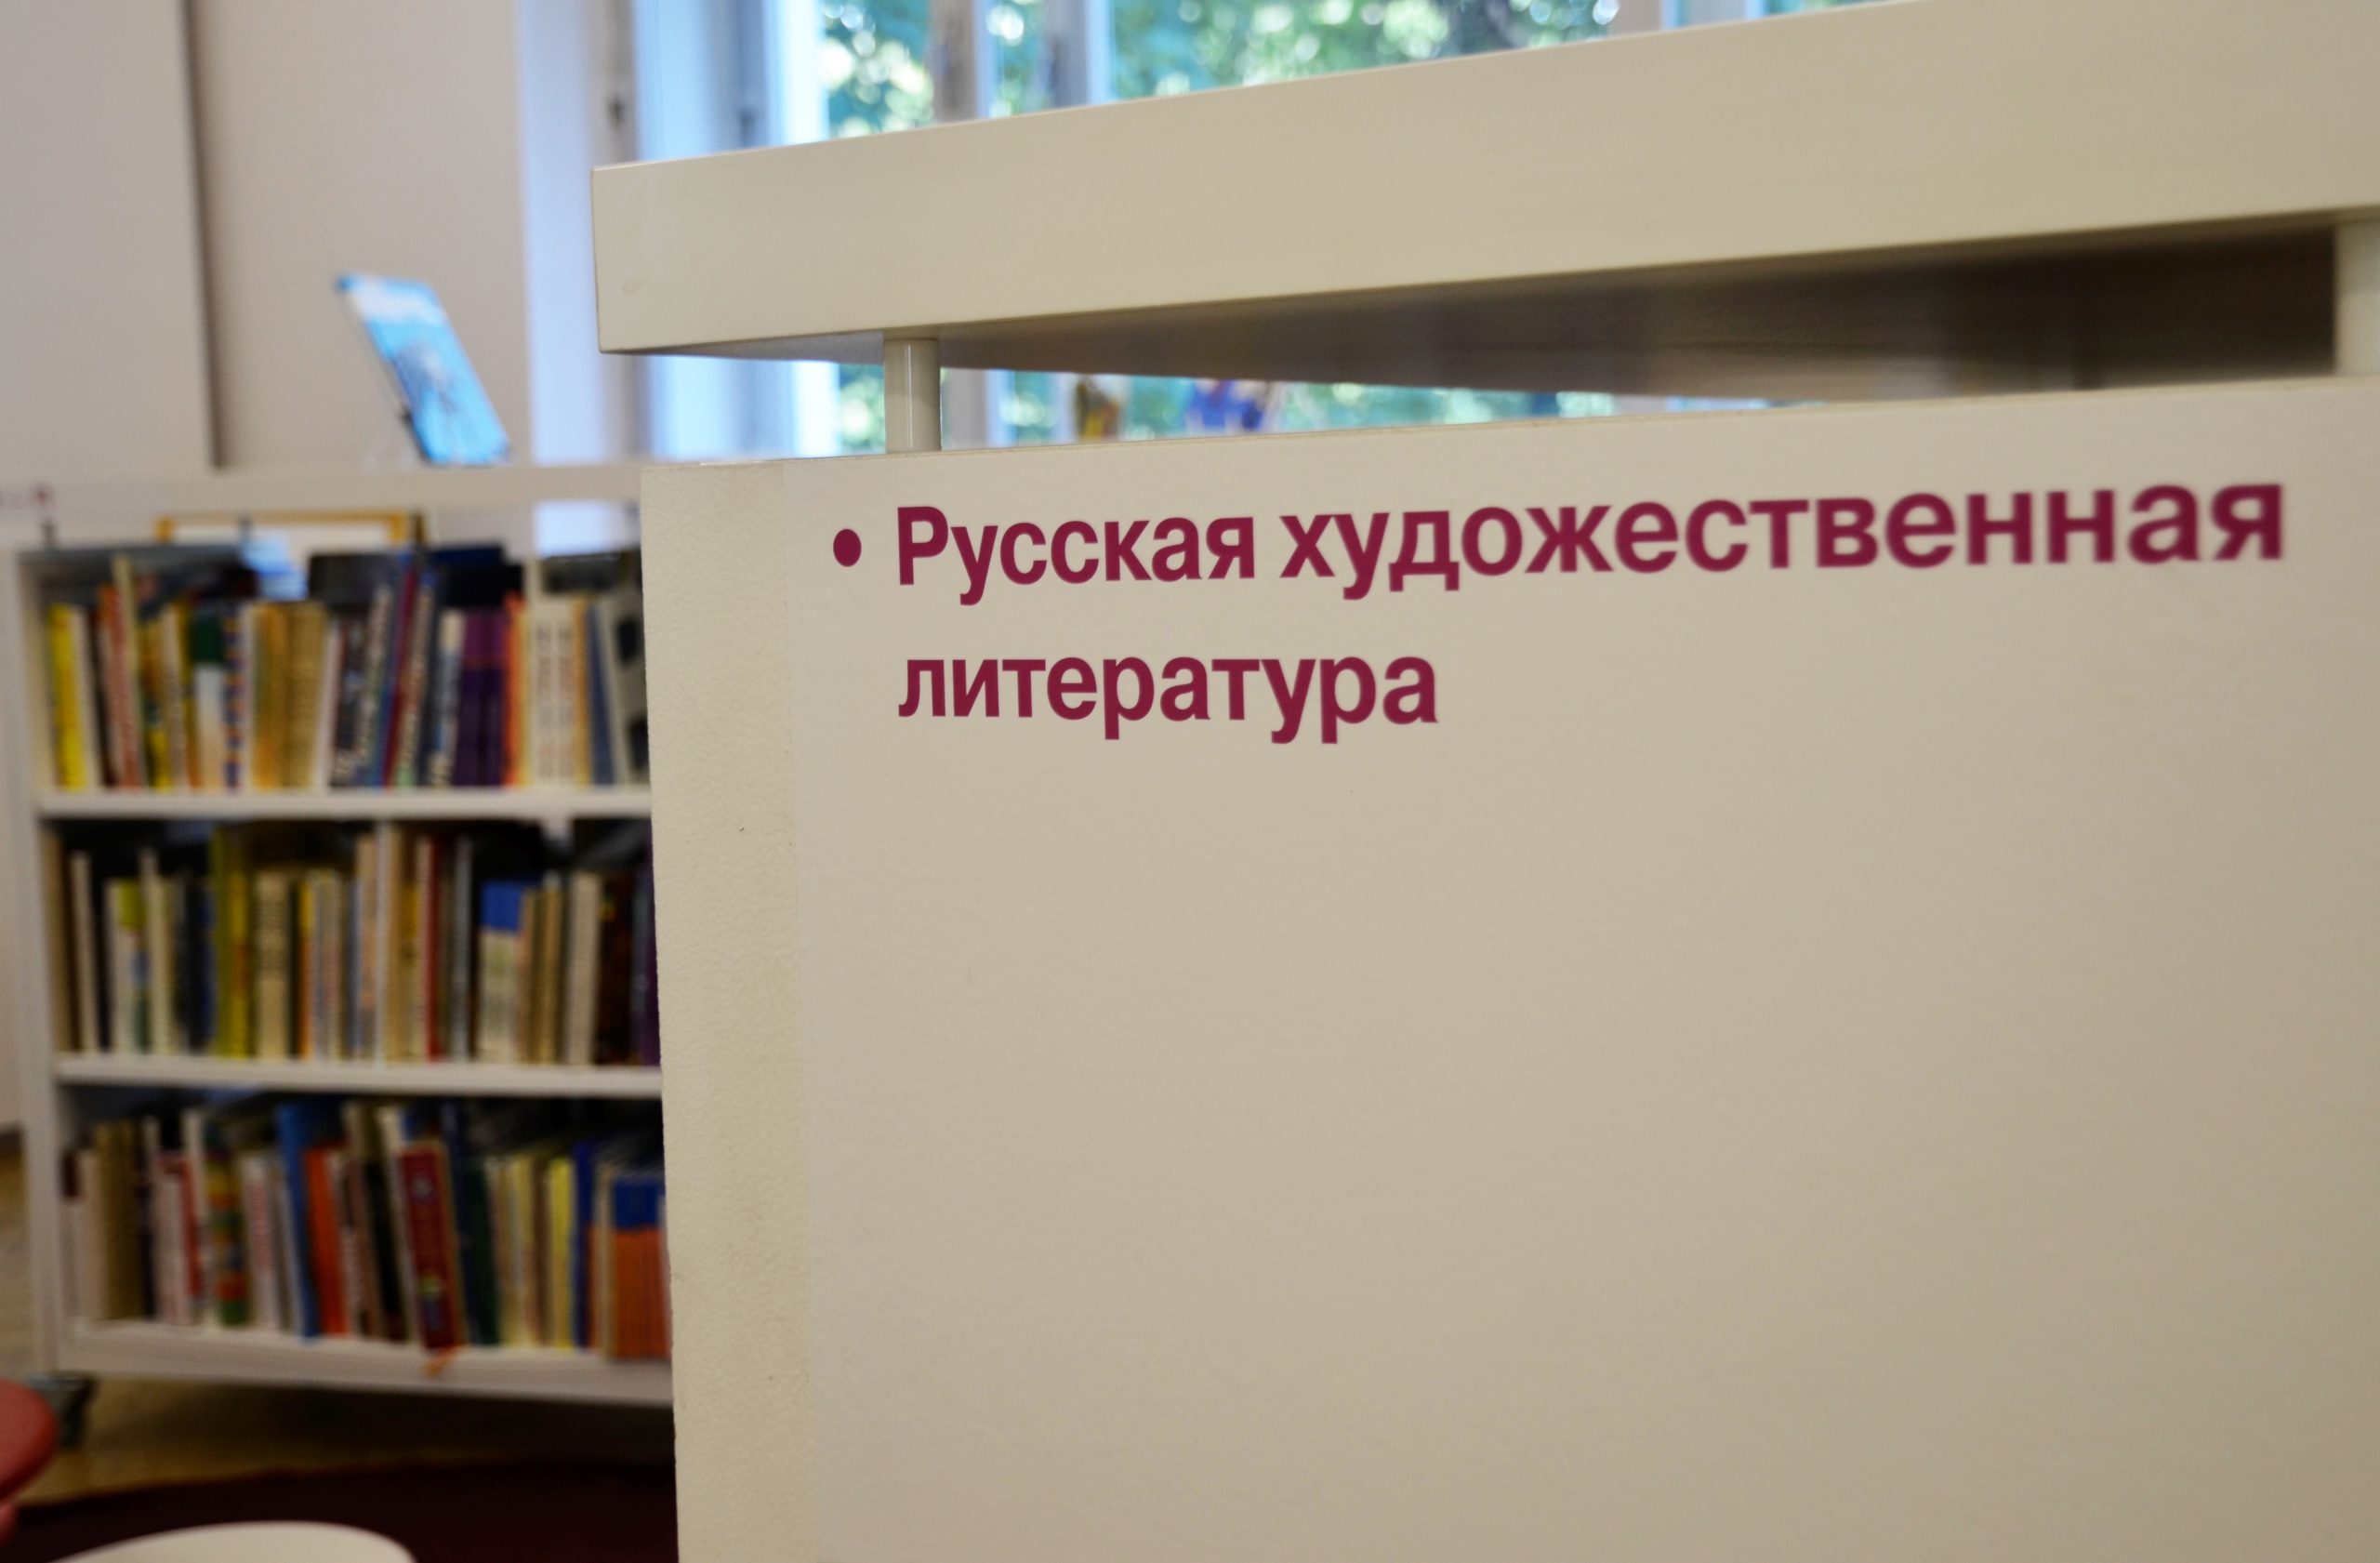 Литературную программу в честь поэта Николая Некрасова провели сотрудники Дома культуры «Солнечный» в Курилово